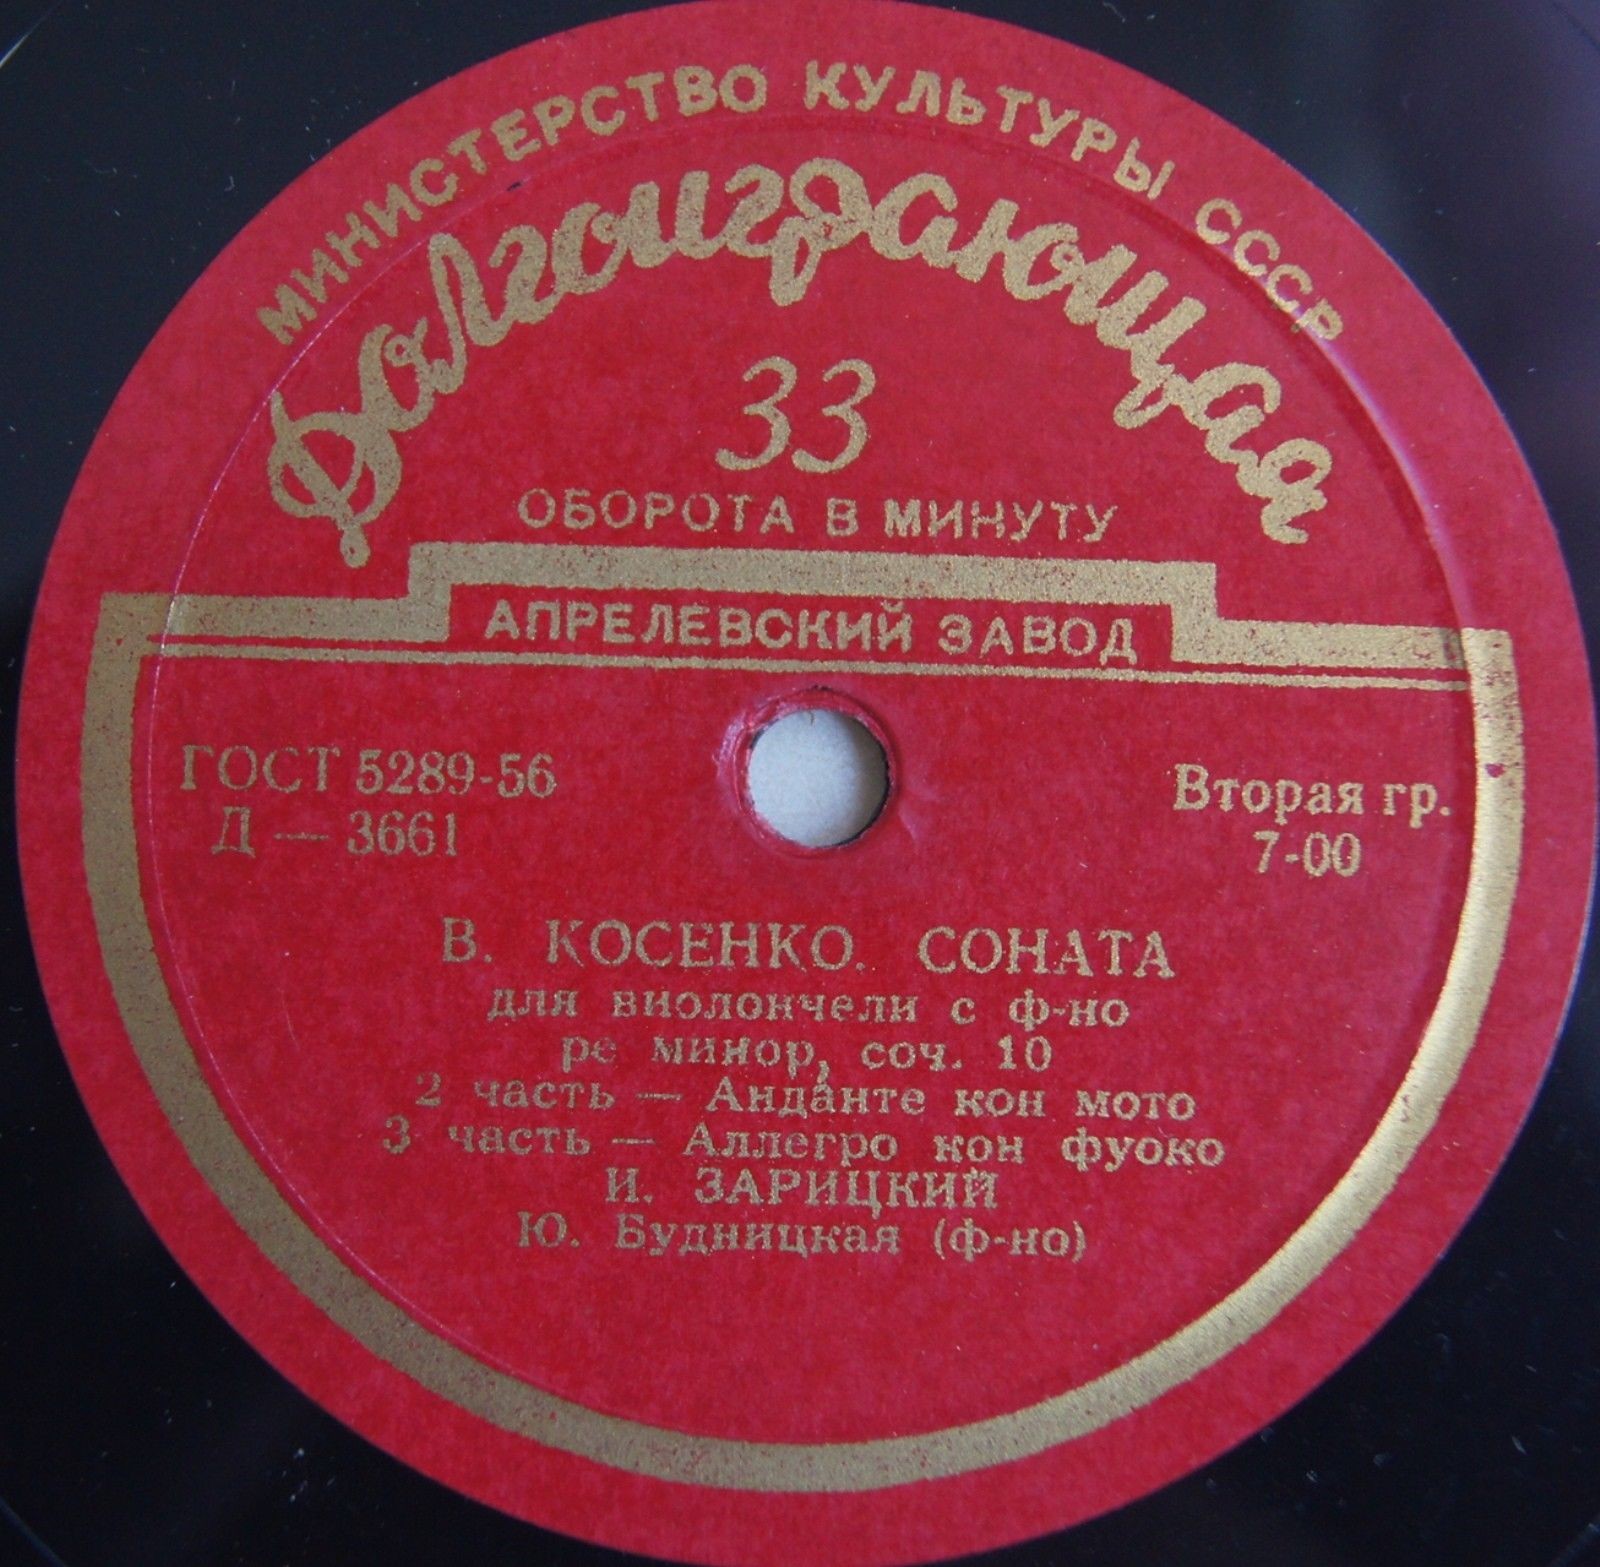 В. КОСЕНКО (1896-1938). Соната для виолончели и ф-но ре минор